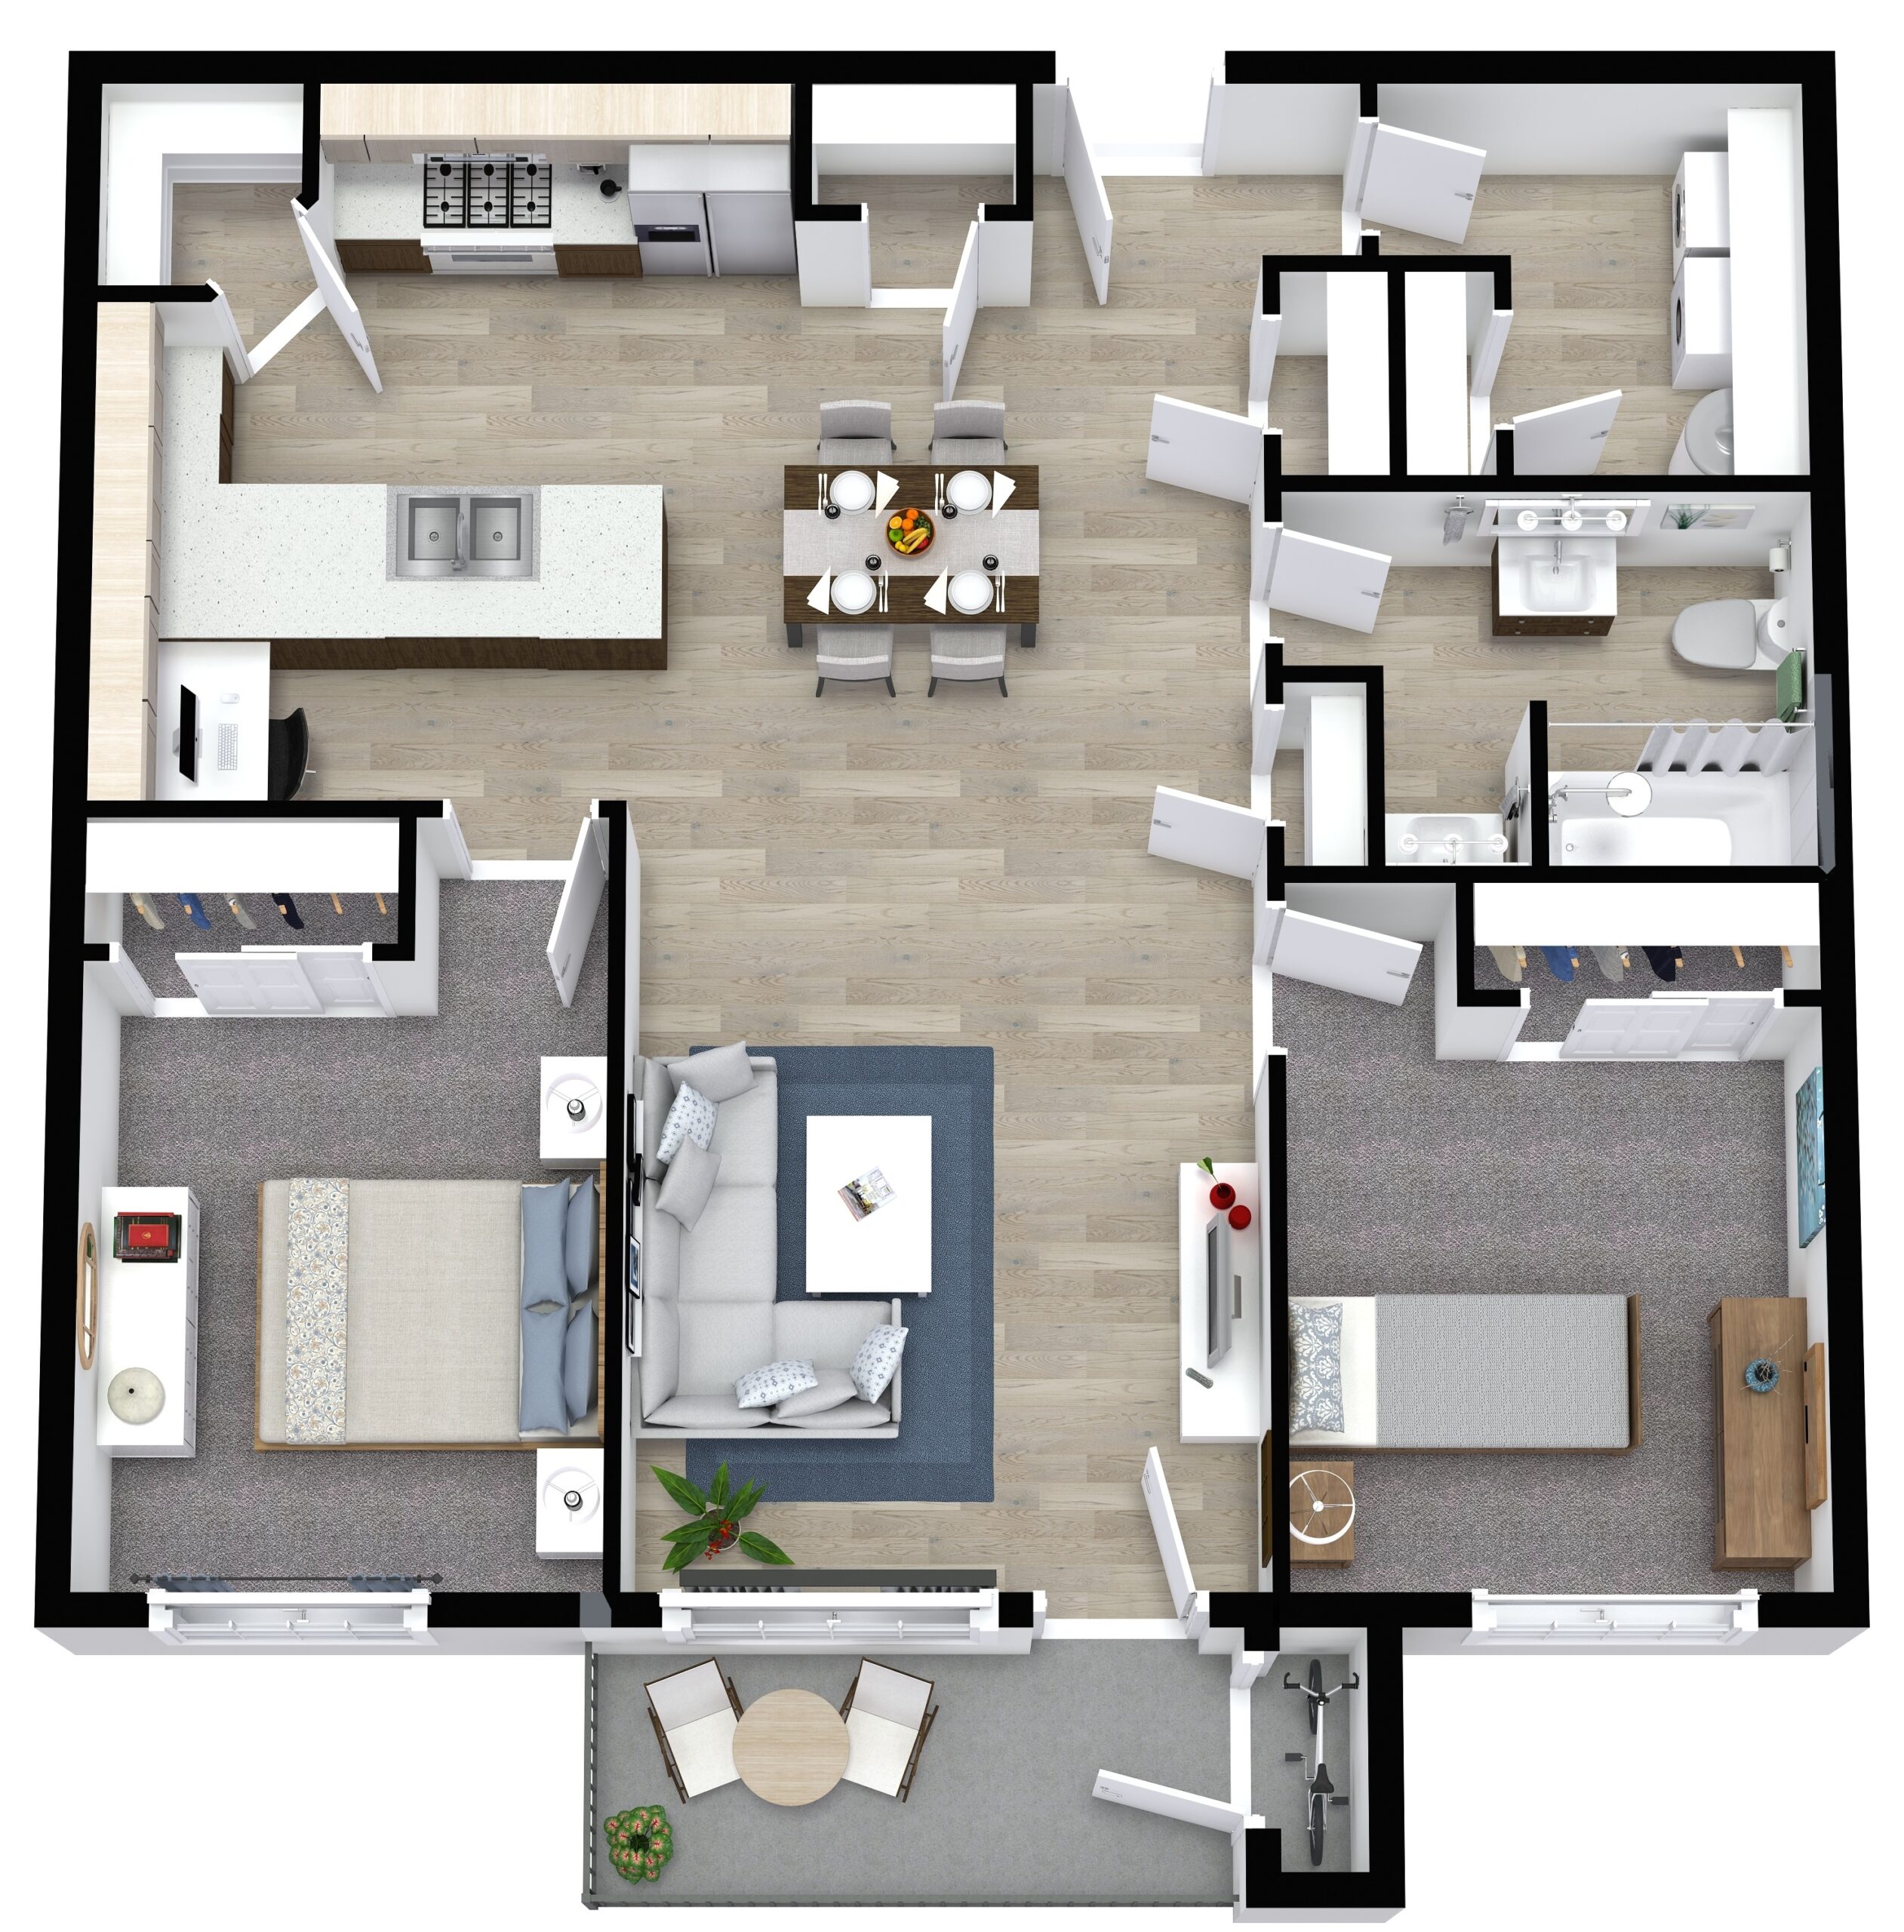 Waterford Terrace 2 Bedroom Floor Plan